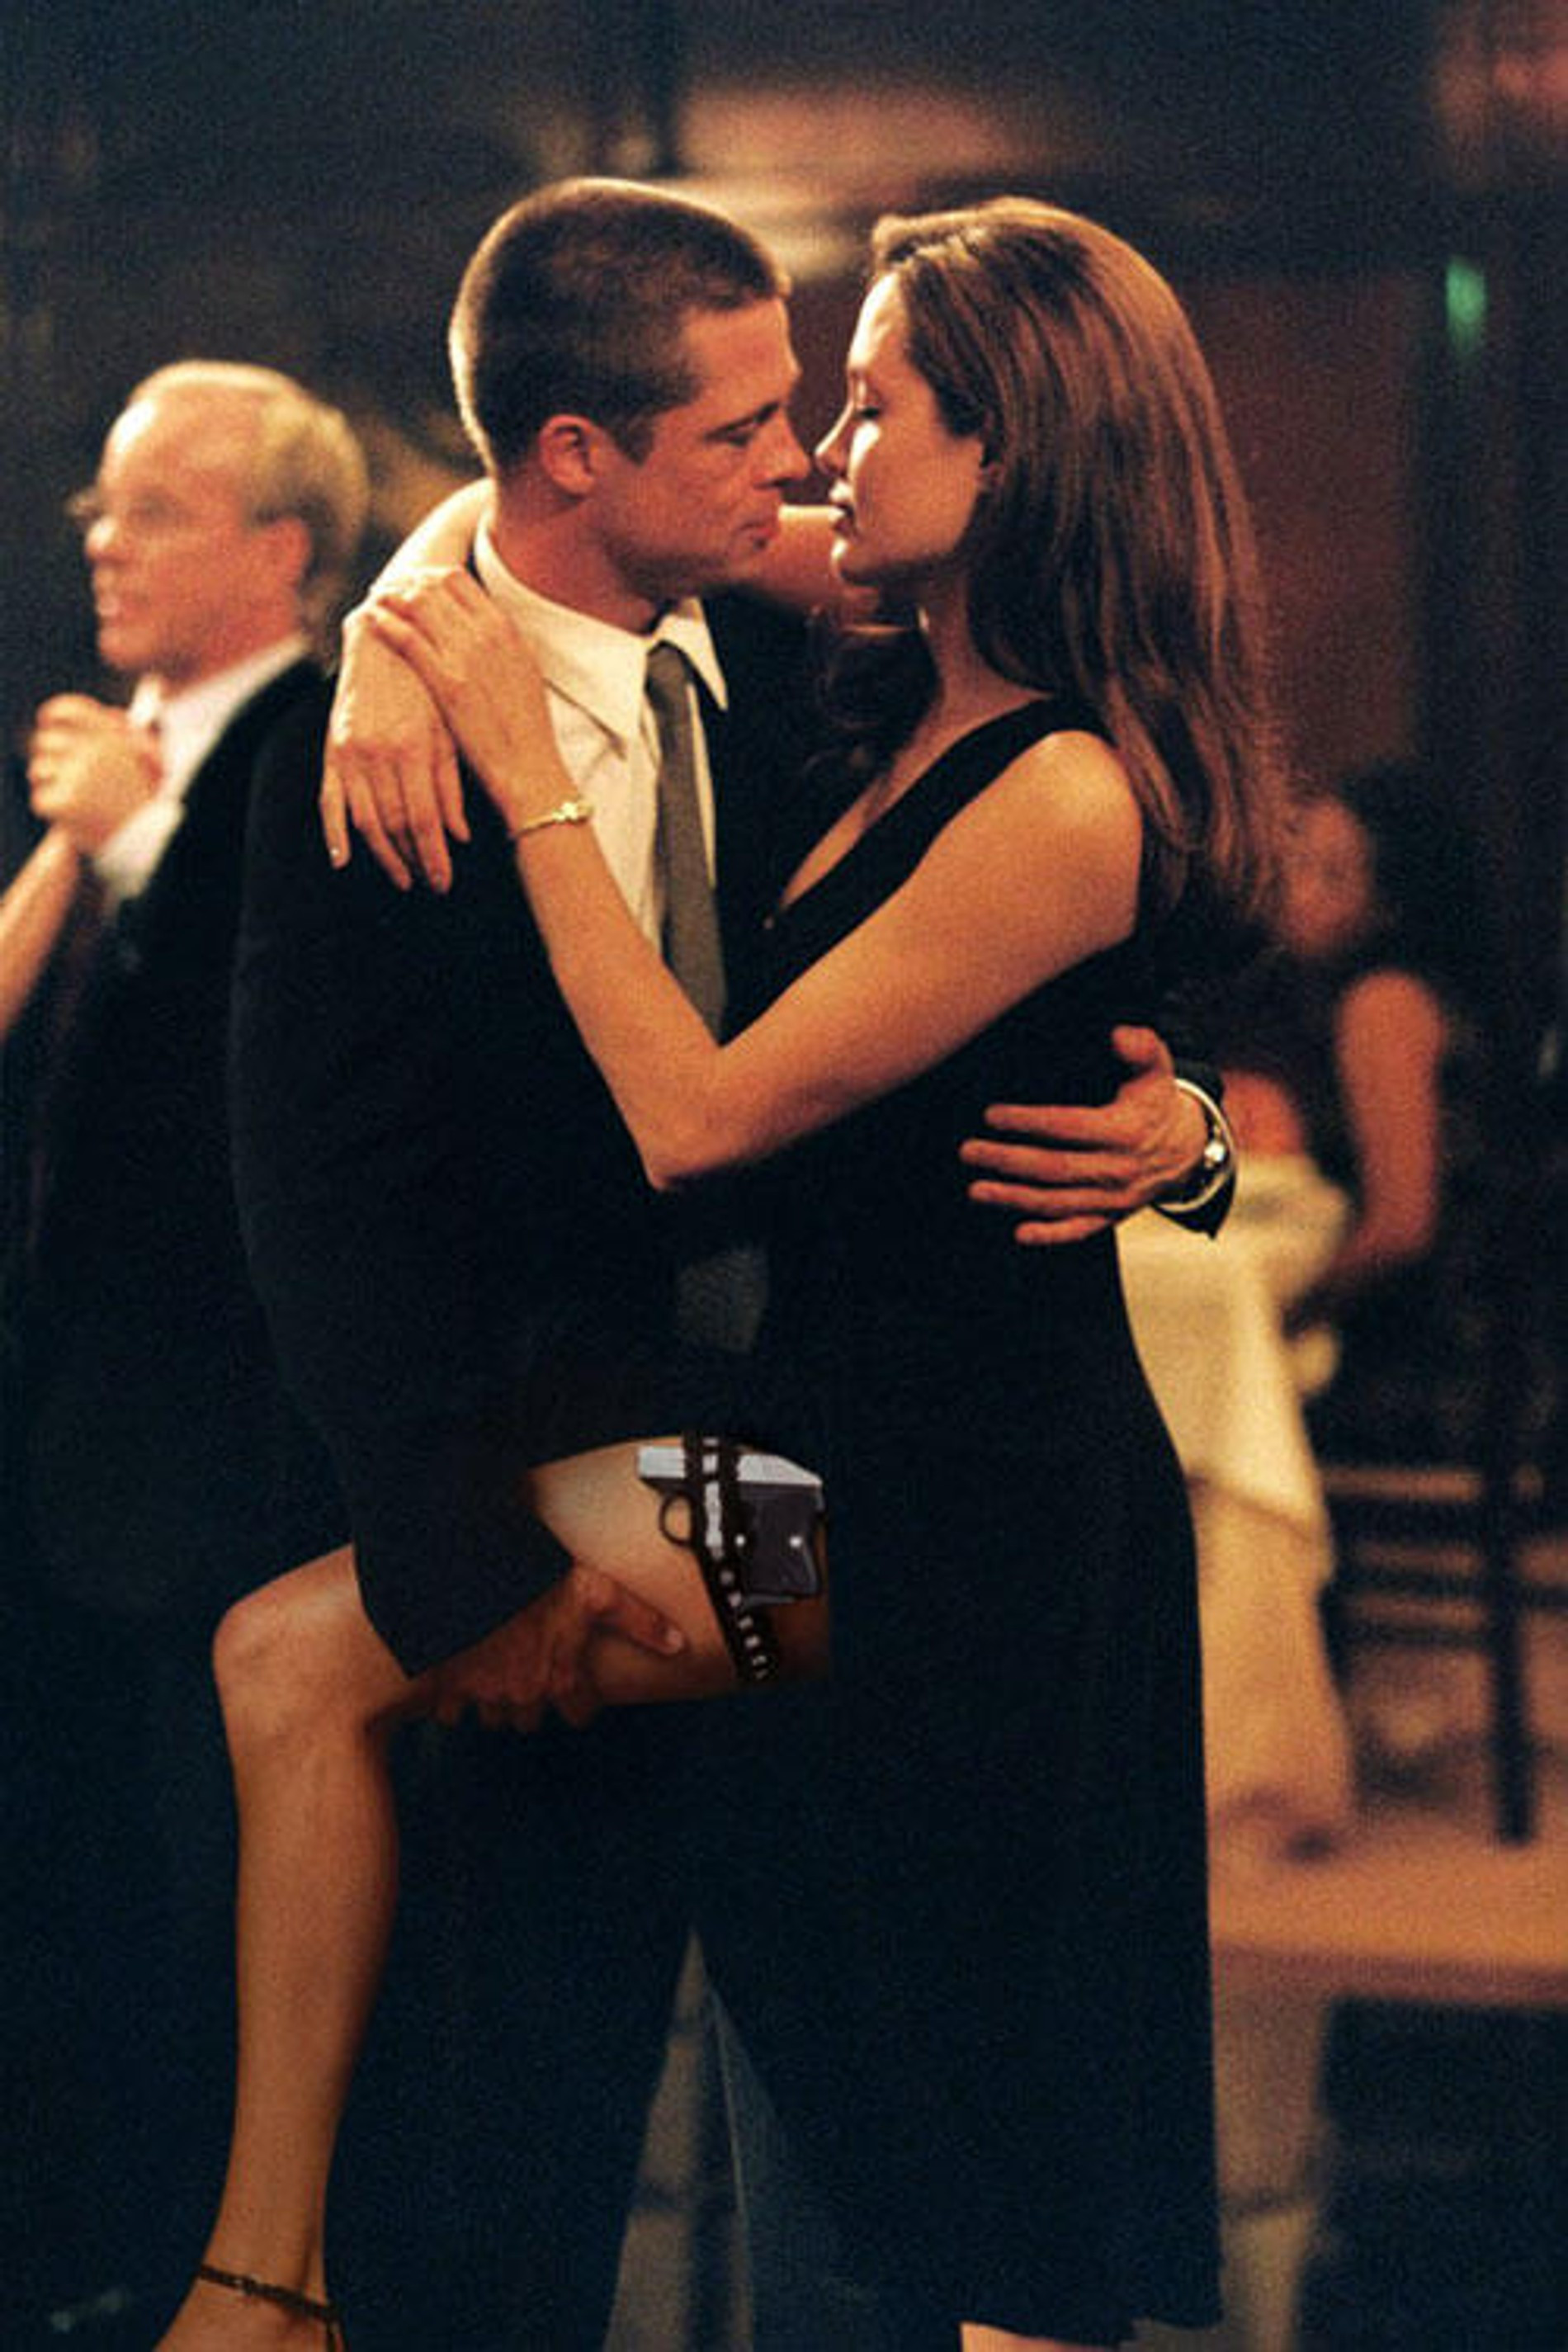 Джоли и Питт
Фото: кадр из фильма «Мистер и миссис Смит»